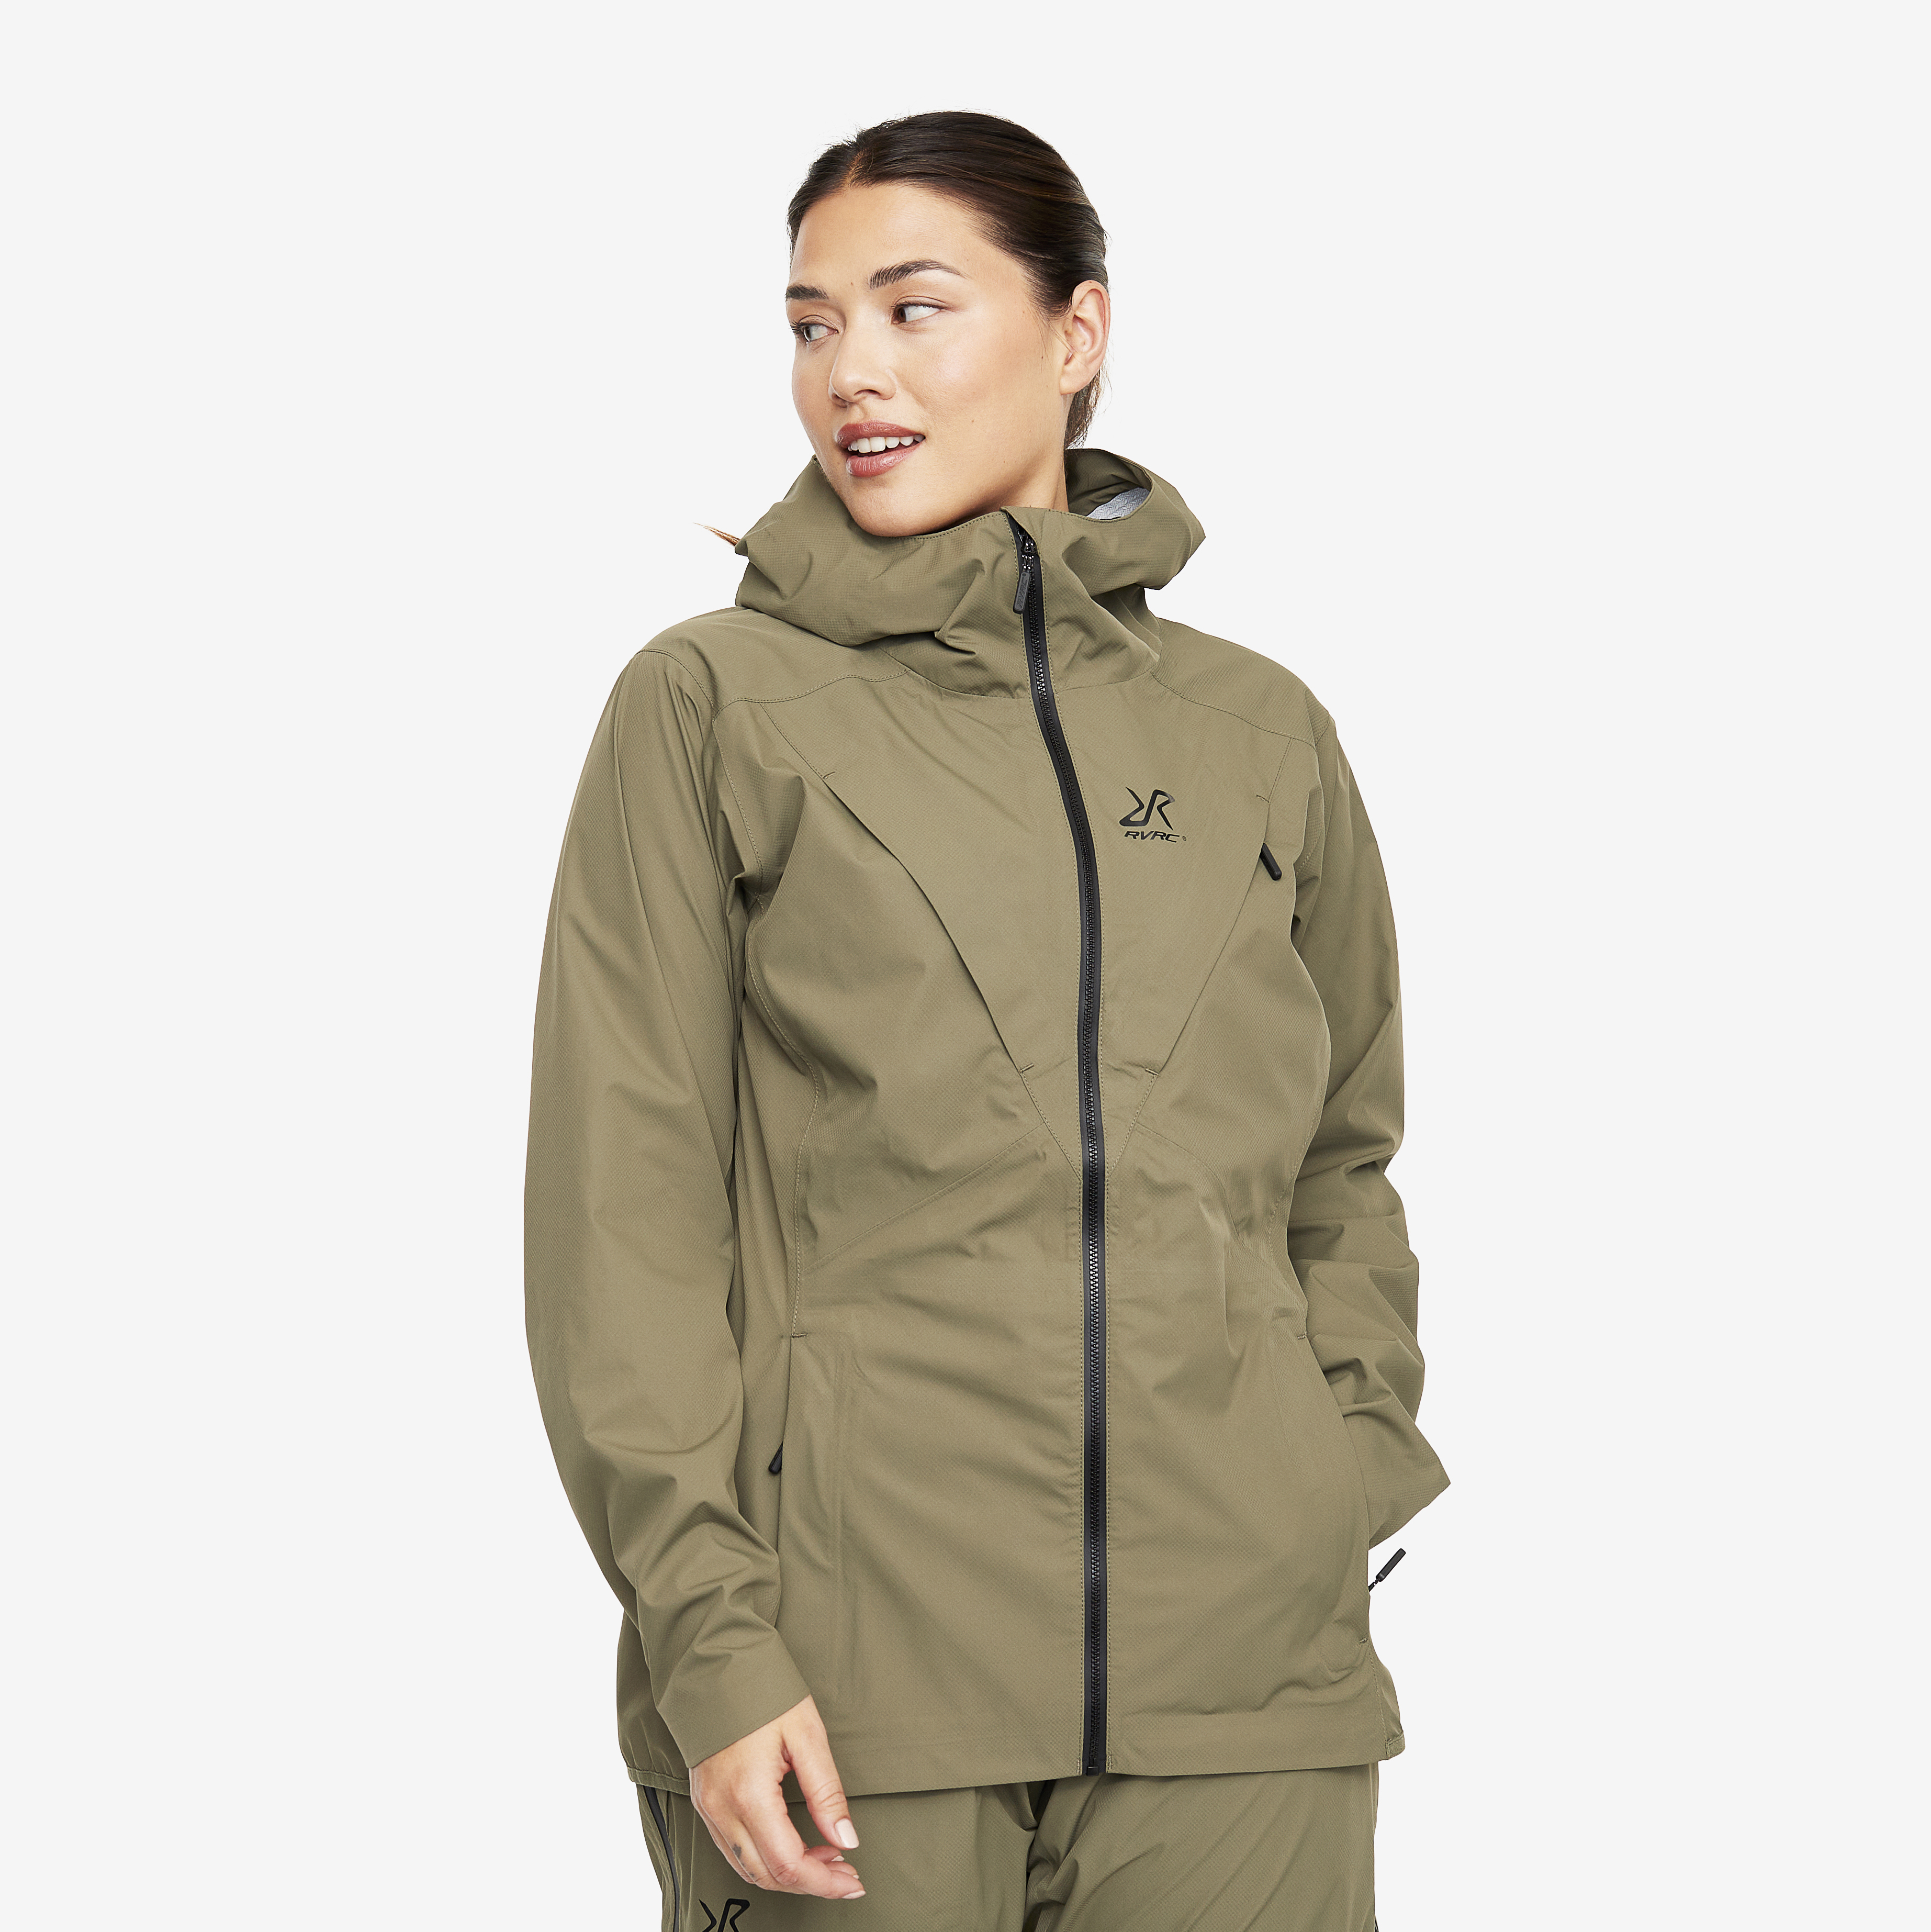 Typhoon waterproof jacket for women in green